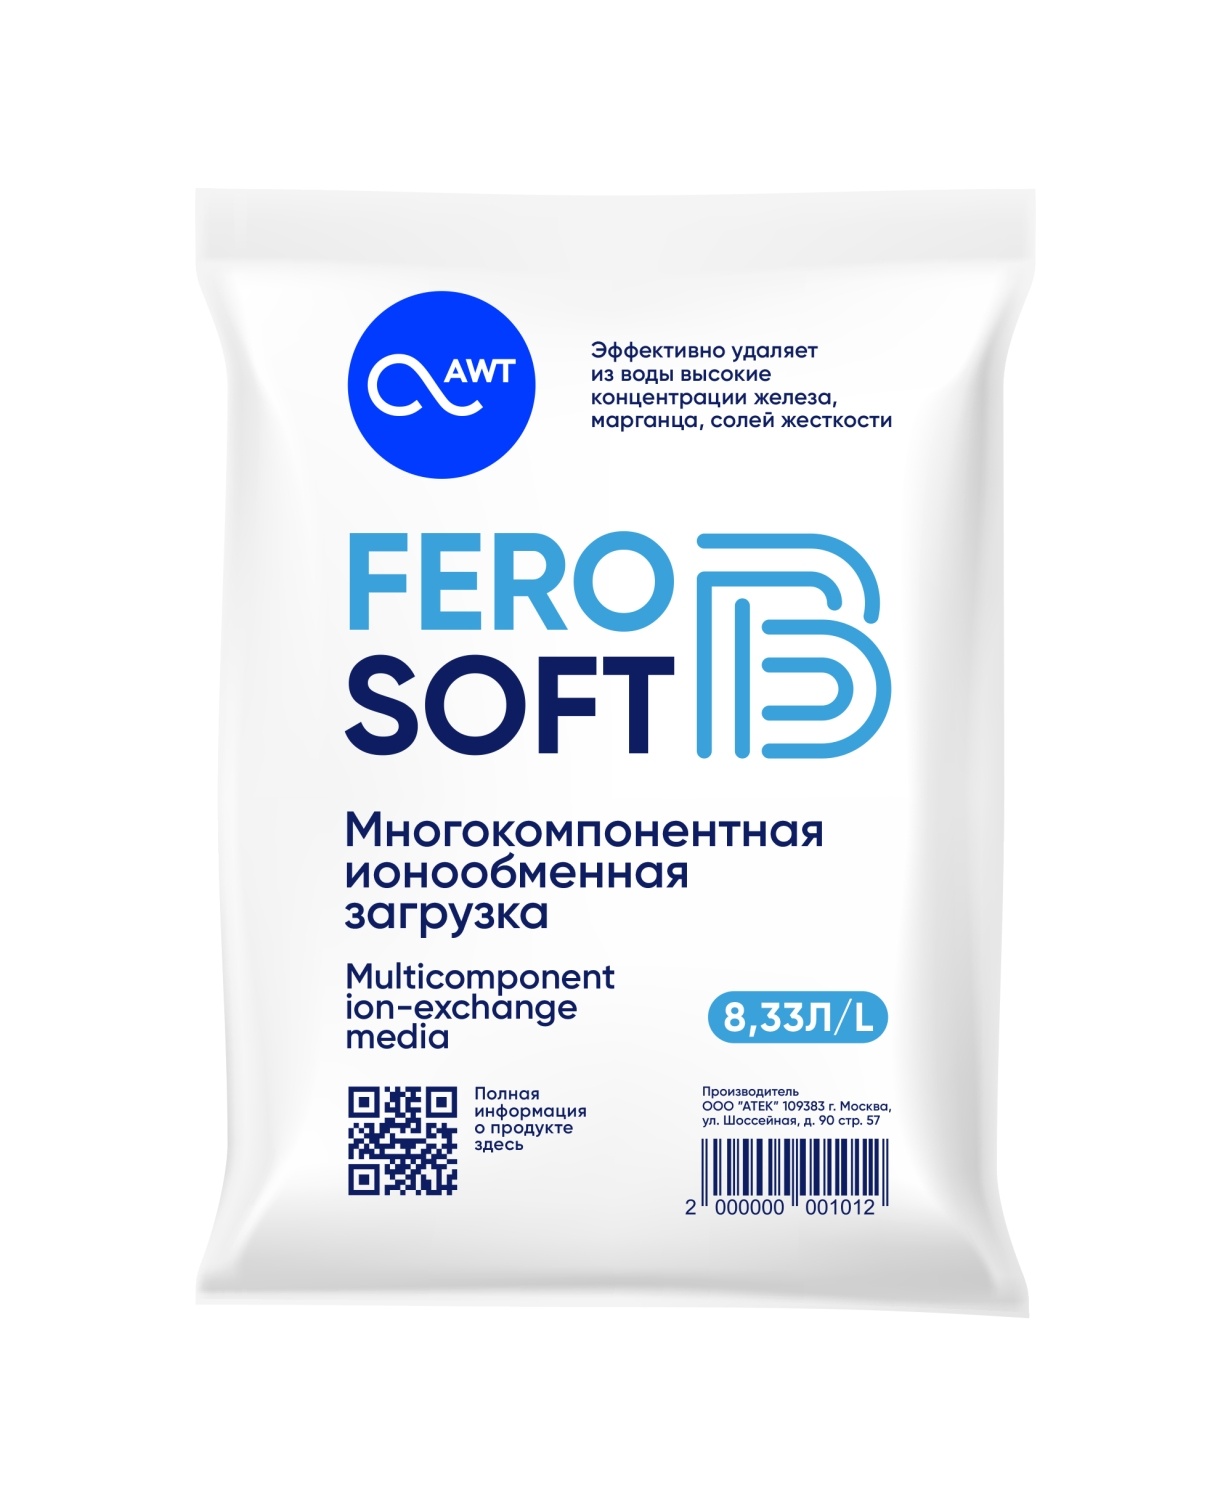 FeroSoft-B (8,33л. 6,7 кг) многокомпанентная загрузка